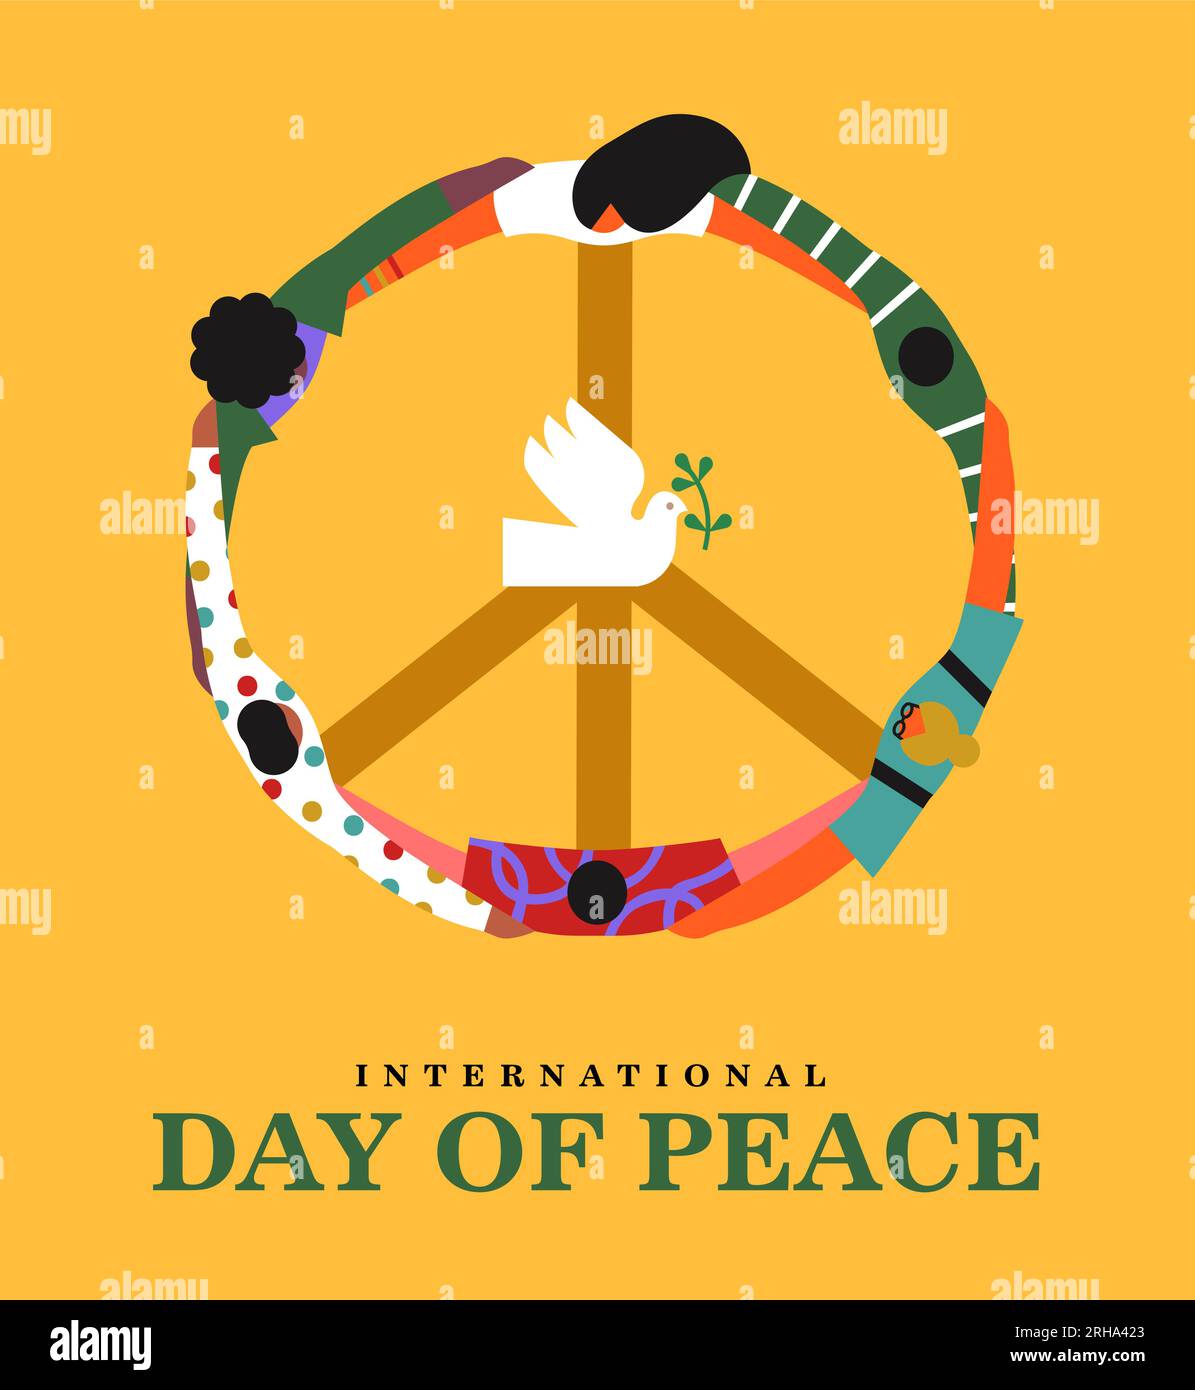 Internationaler Tag des Friedens Vektorbanner-Illustration. Die Gruppe umarmt sich in einem Kreis und schafft die Form des Friedenssymbols und der weißen Taube mit Oli Stock Vektor